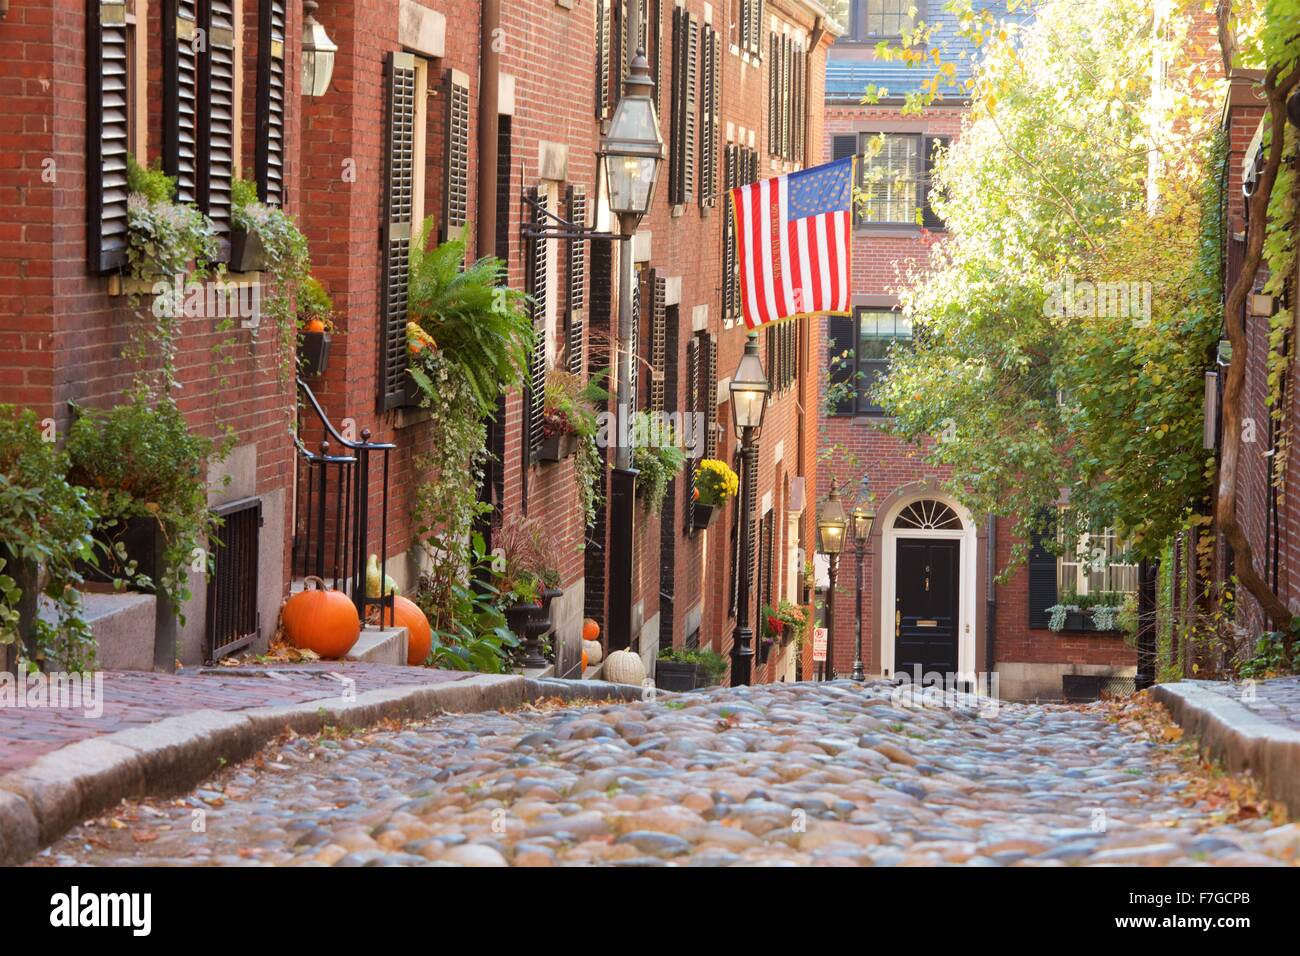 Autumn on Acorn Street in Beacon Hill, Boston, Massachusetts Stock Photo